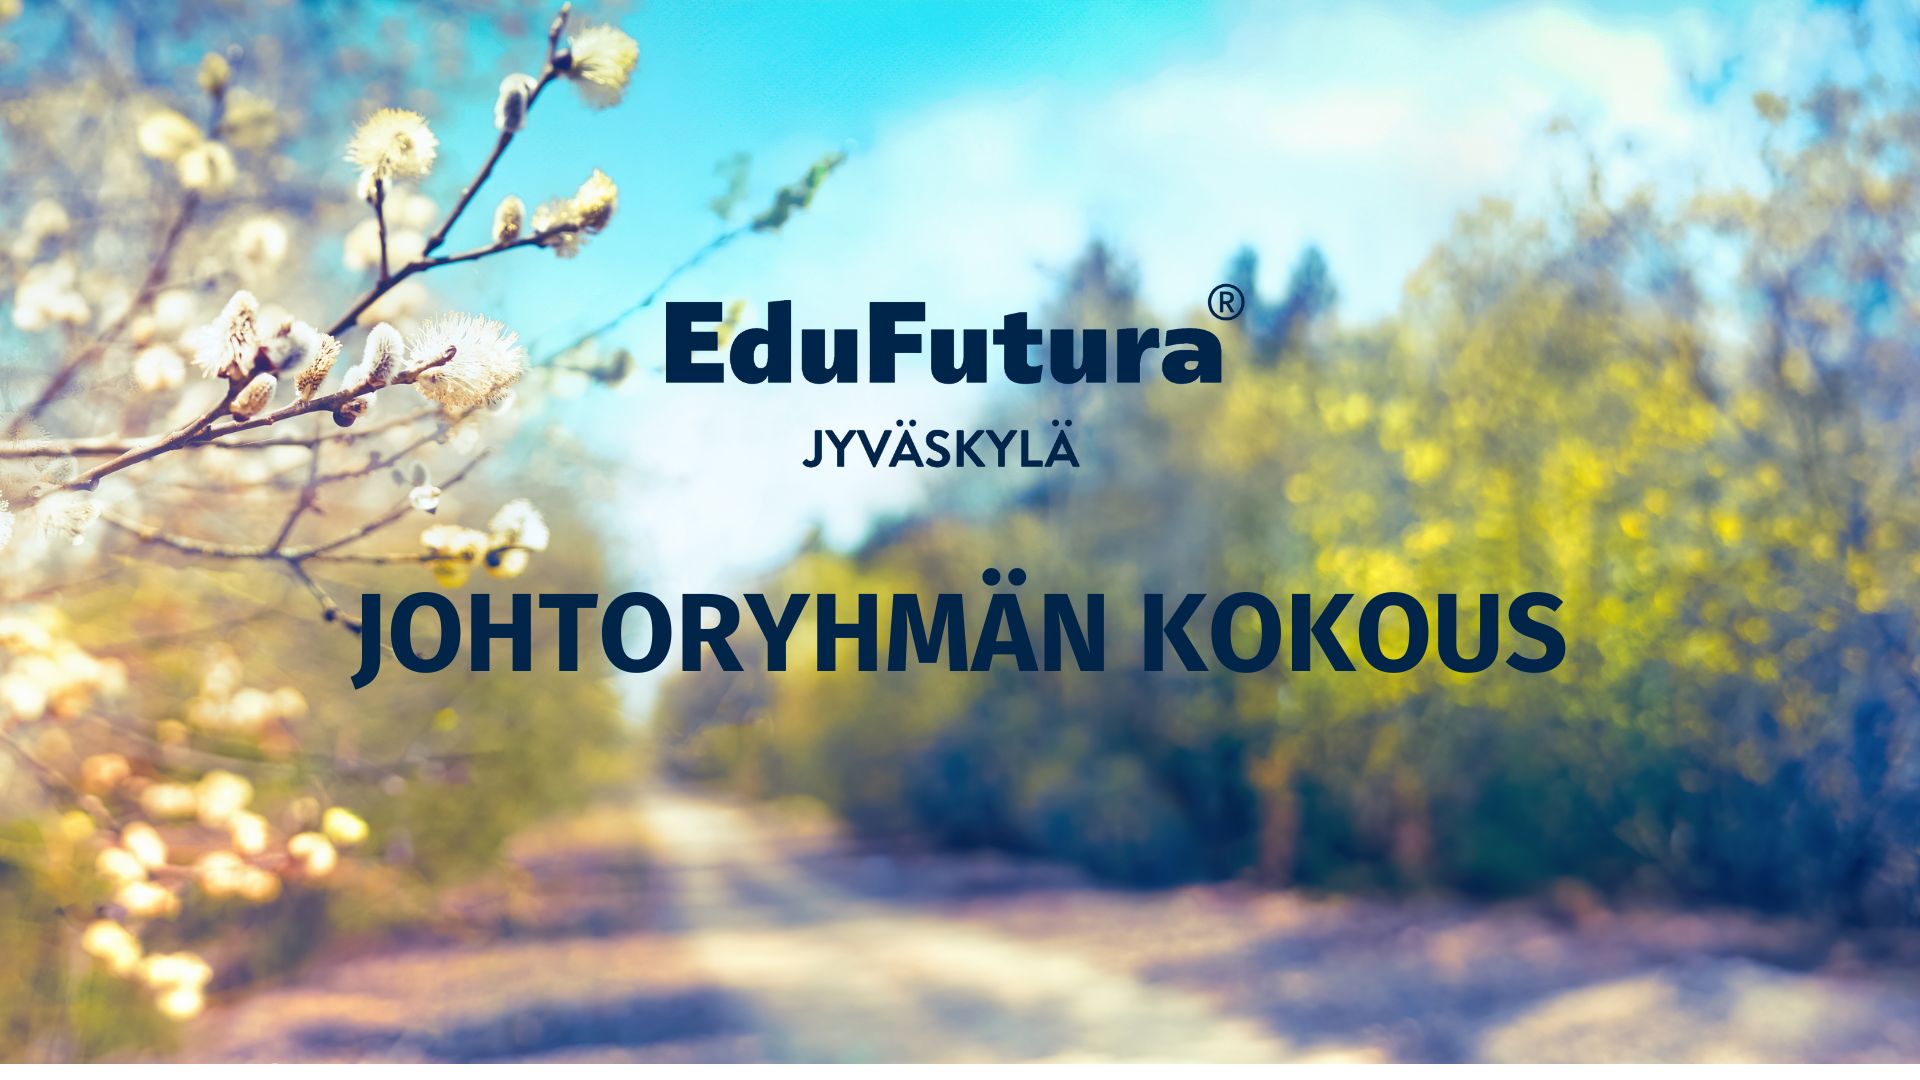 Keväinen tie, kuvan etualalla pajunkissoja. Edessä EduFutura-logo ja teksti "johtoryhmän kokous"